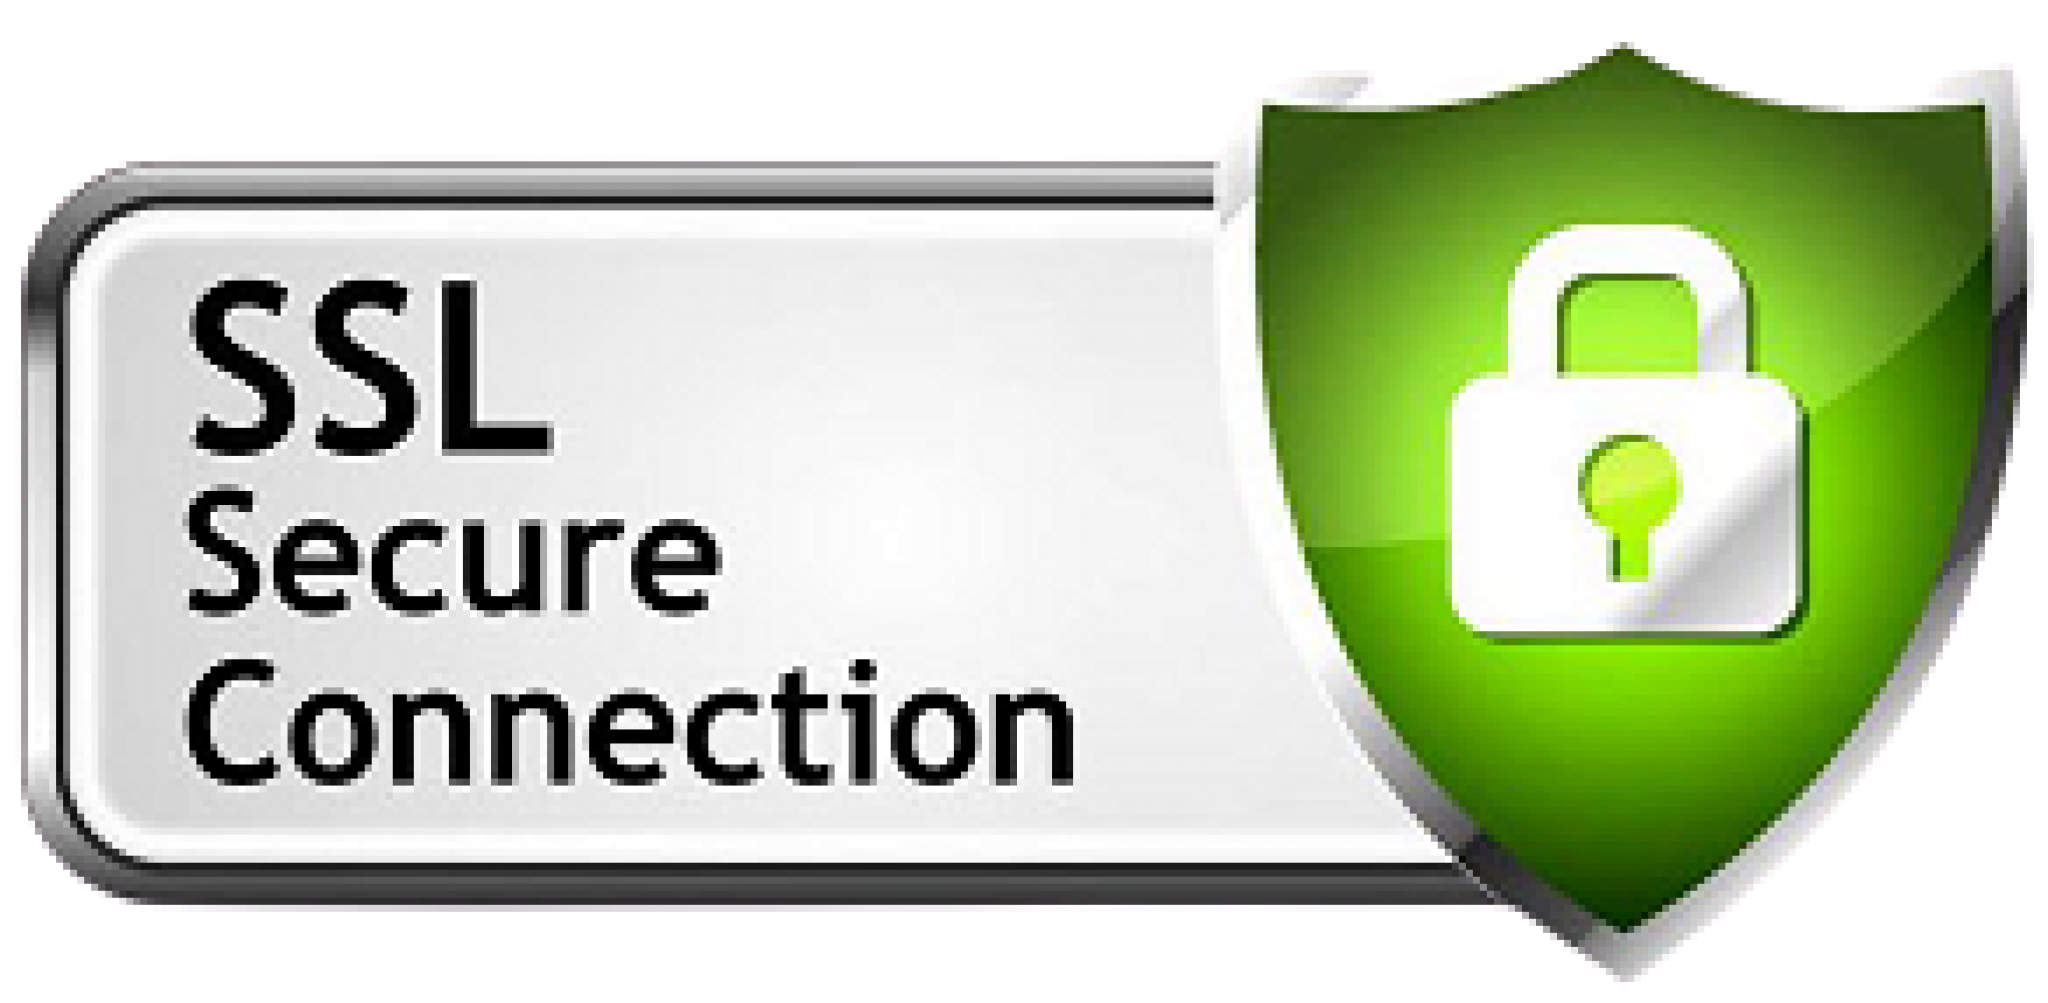 Ssl urls. SSL логотип. SSL сертификат. SSL secure. ССЛ сертификат.